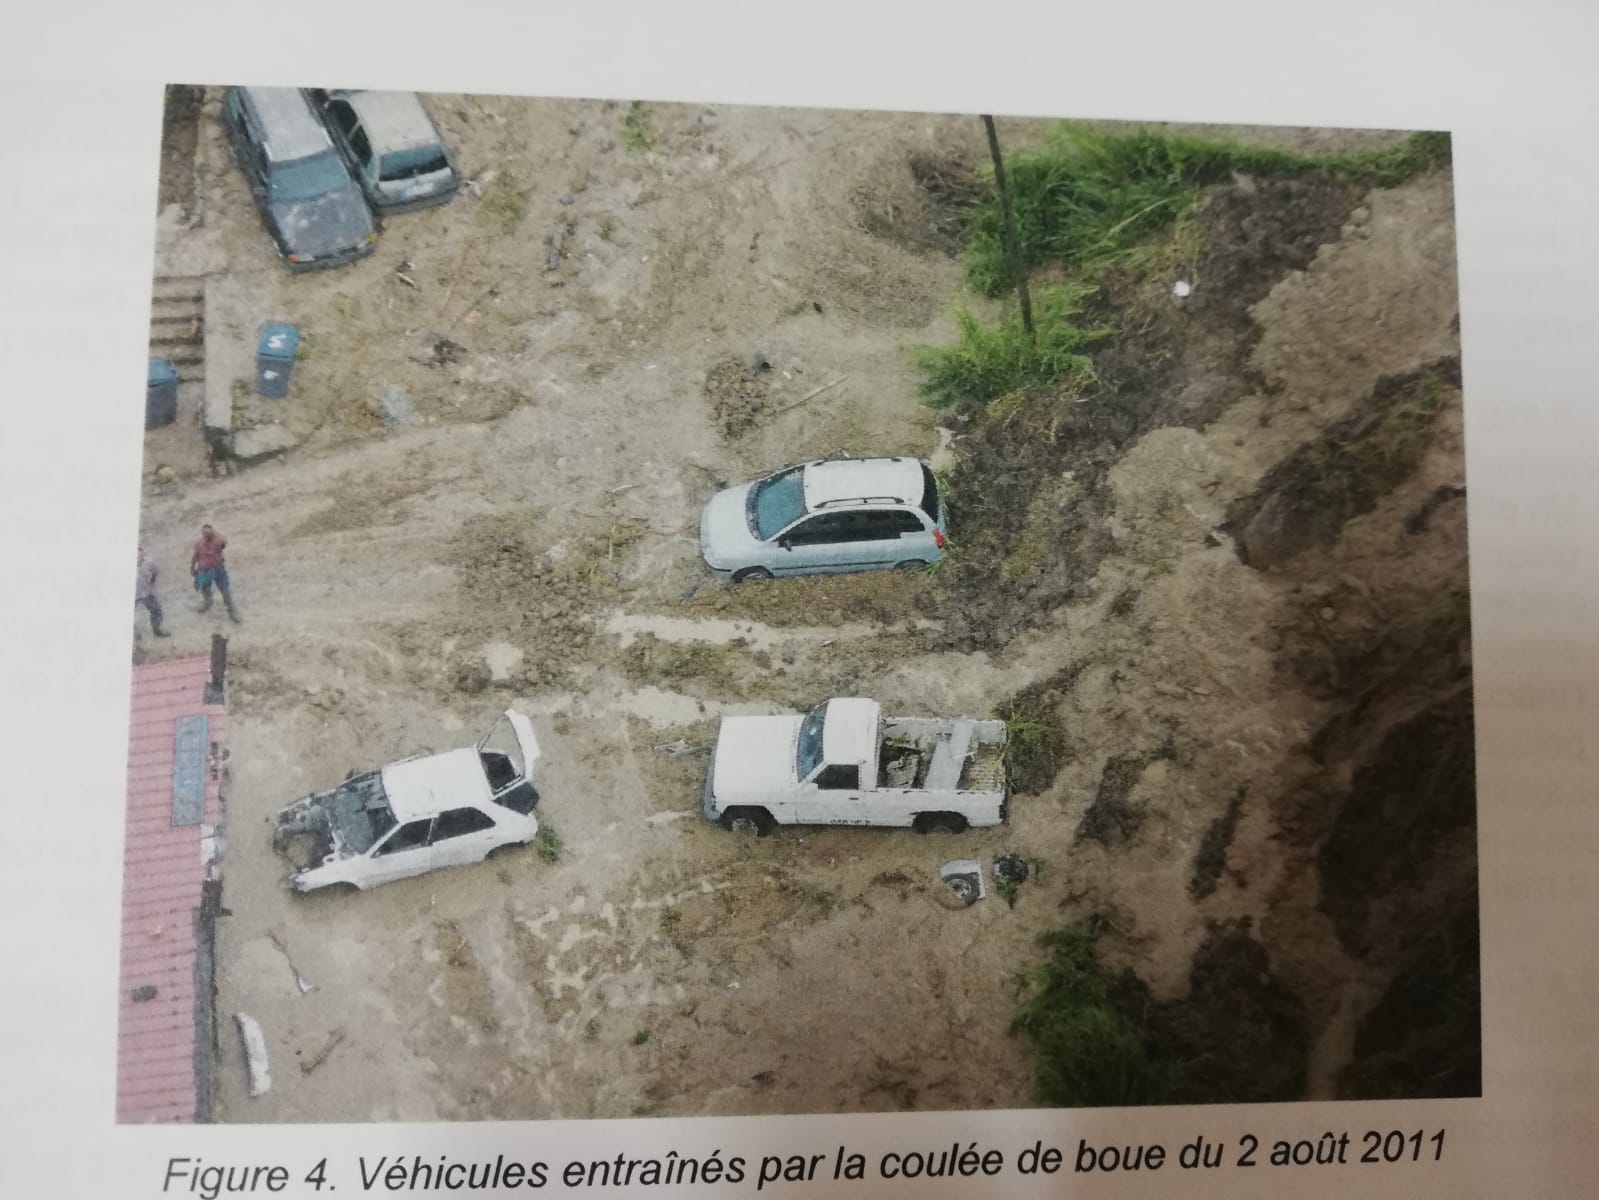     À Morne Calebasse, des procédures d'expropriation 11 ans après le glissement de terrain

